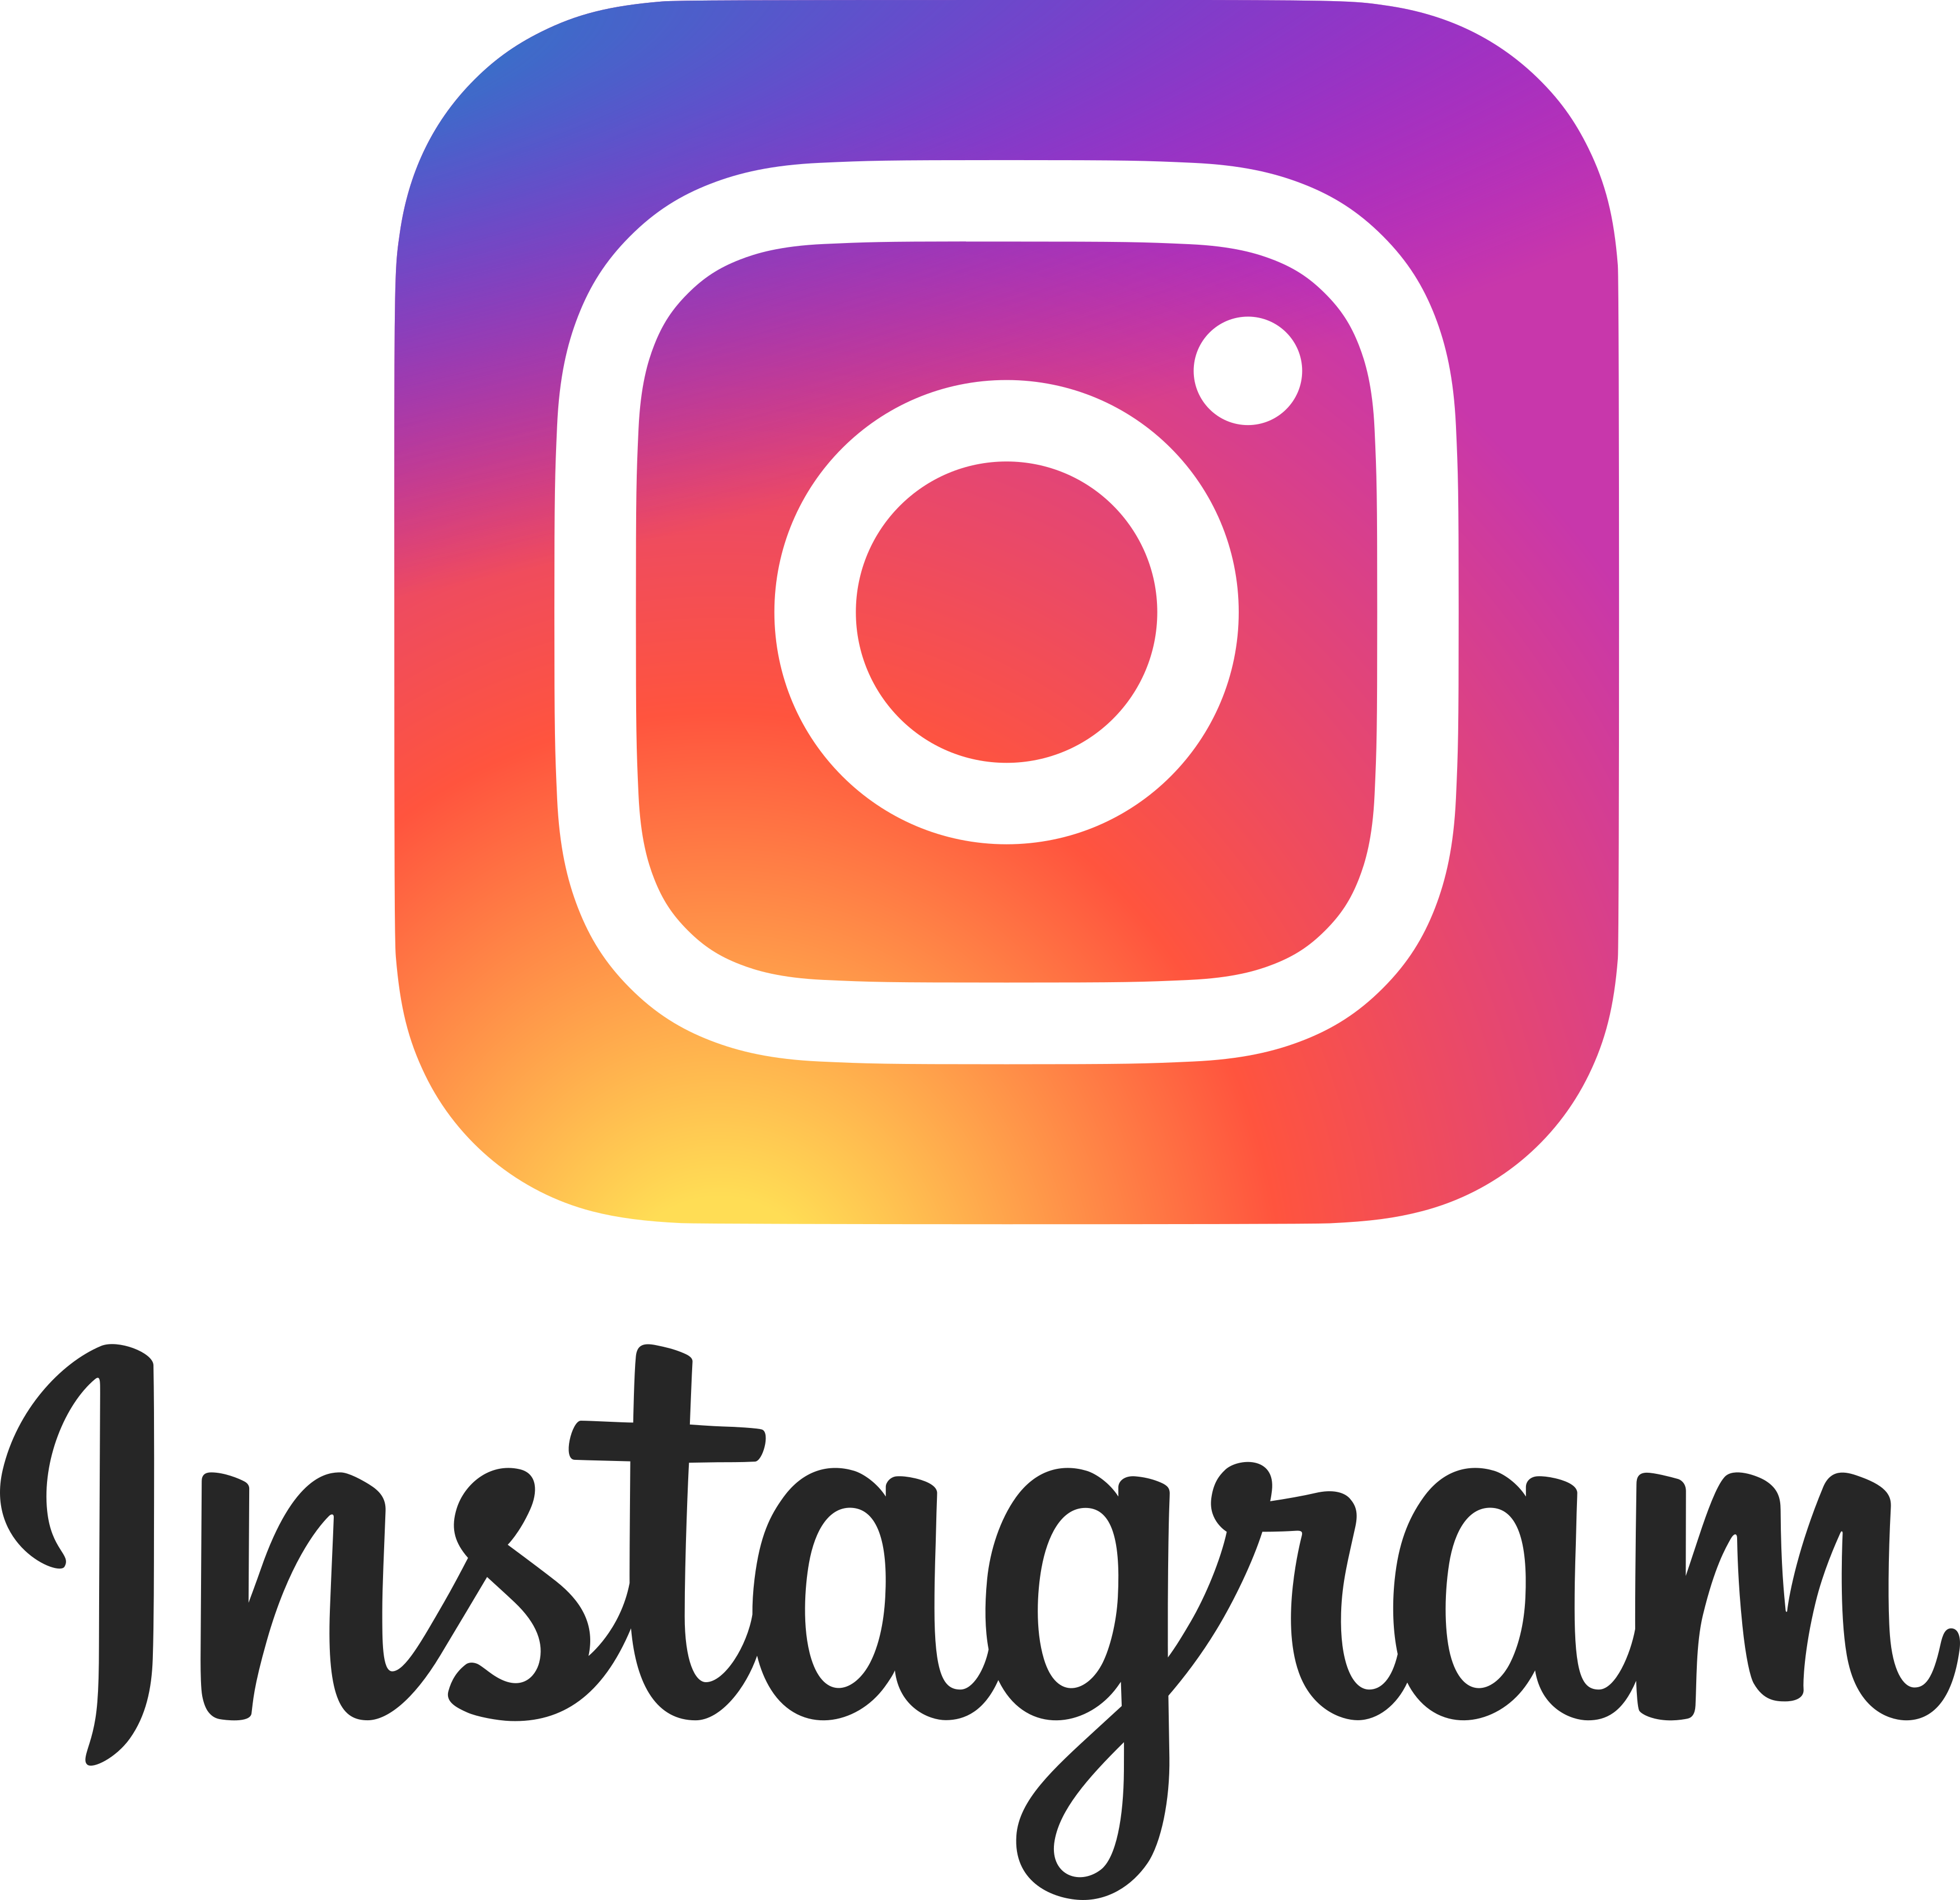 Logo Instagram Download HQ PNG Image